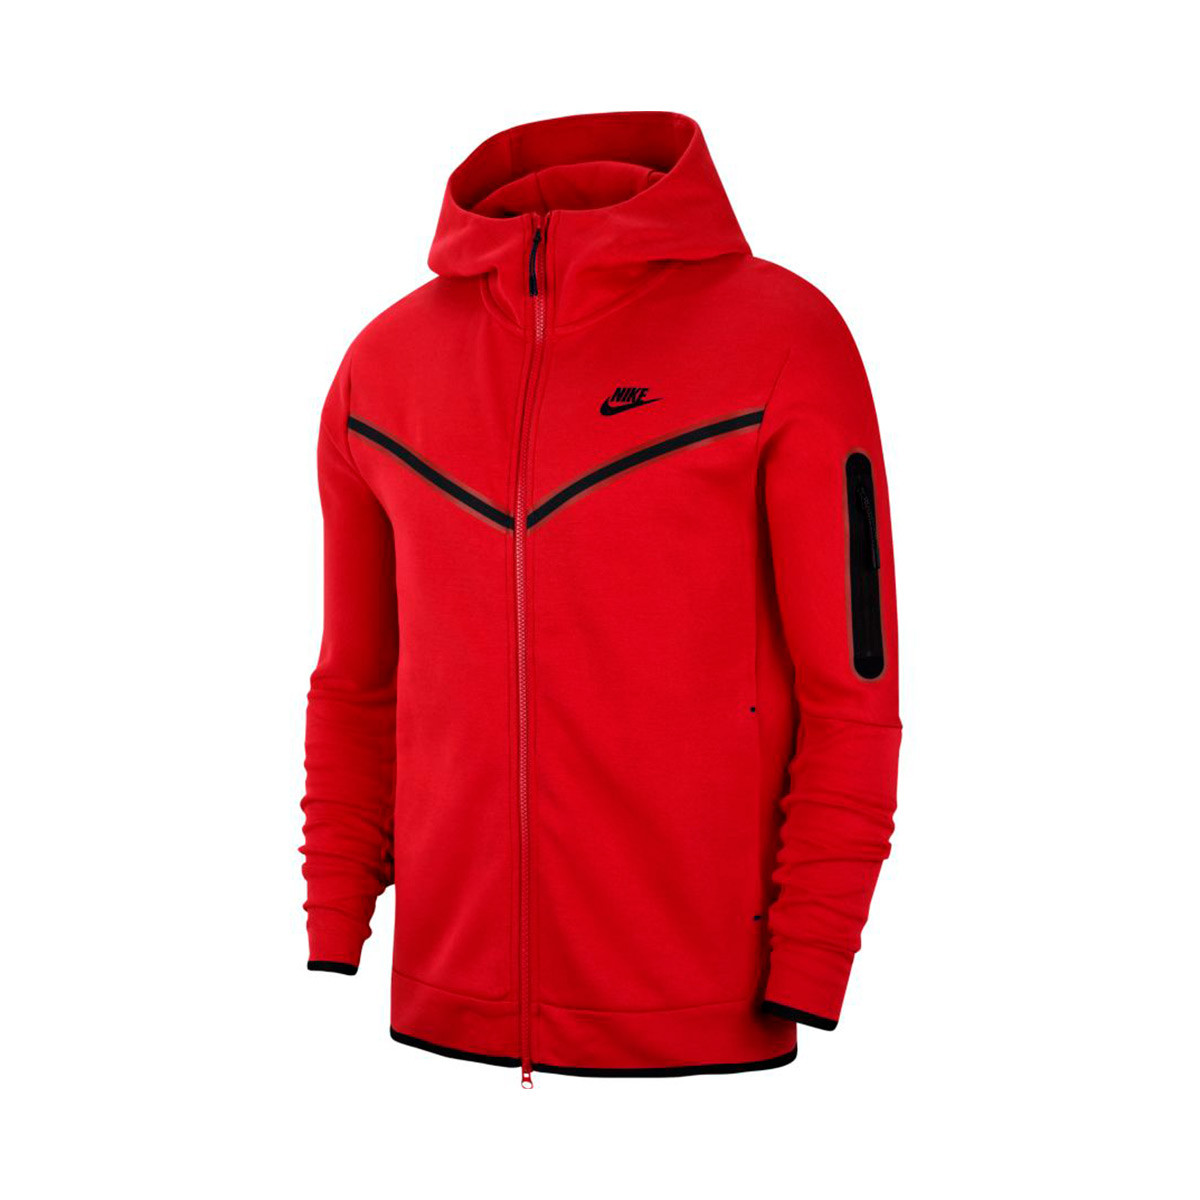 Jacket Nike Sportswear Tech Fleece University Red Black Futbol Emotion